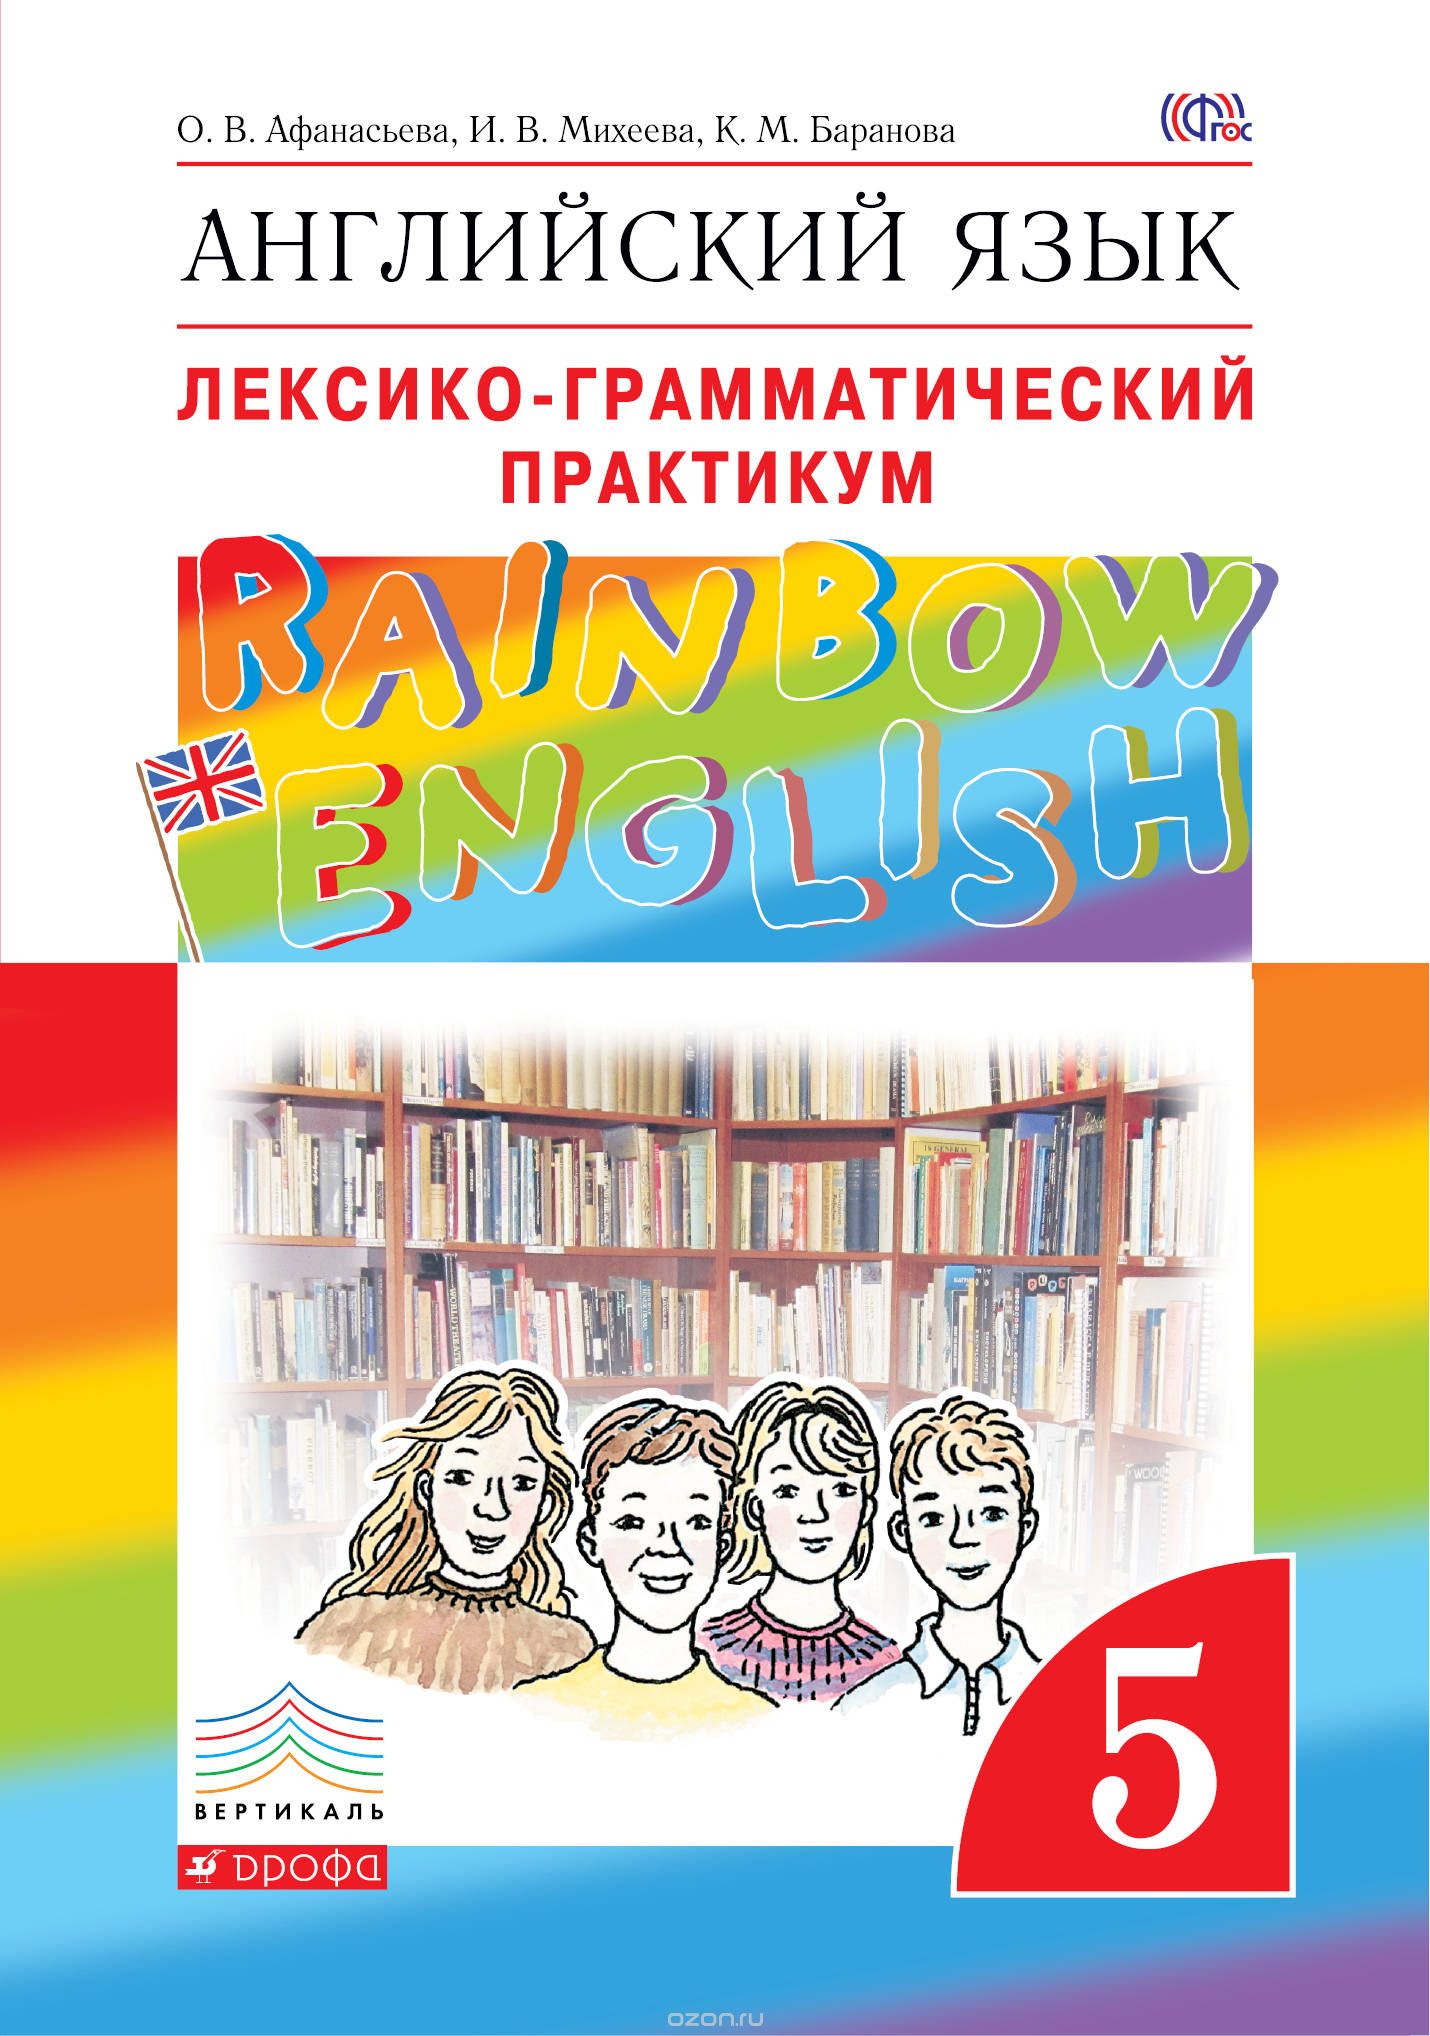 Английский язык."Rainbow English". 5 кл. Лексико-грамматический практикум., О. В. Афанасьева; И. В. Михеева; К. М. Баранова